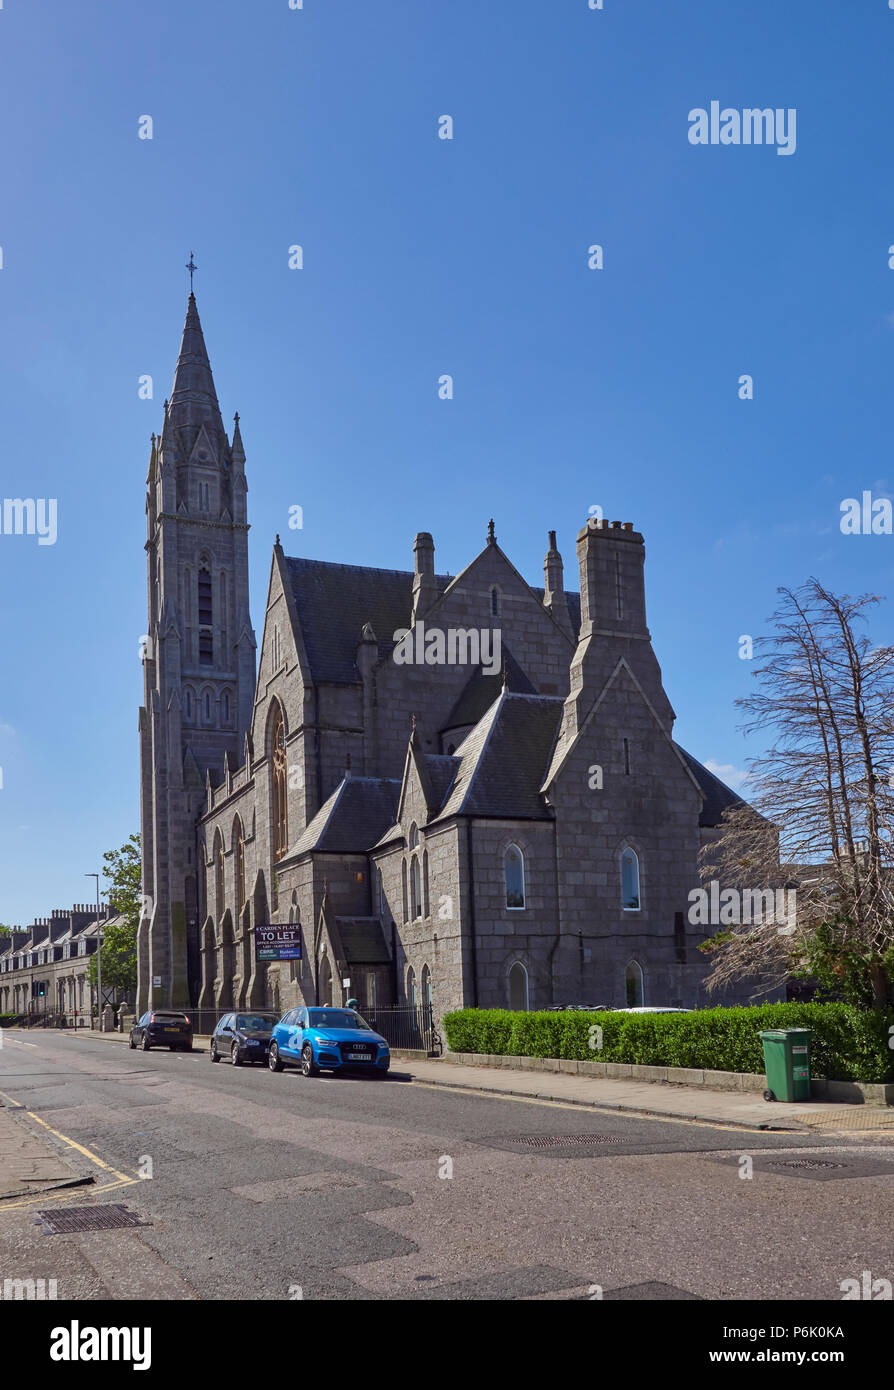 Un viejo edificio de la Iglesia de granito convertido en oficinas en el Queens Road en el granito de la ciudad de Aberdeen en Aberdeenshire, Escocia. Foto de stock